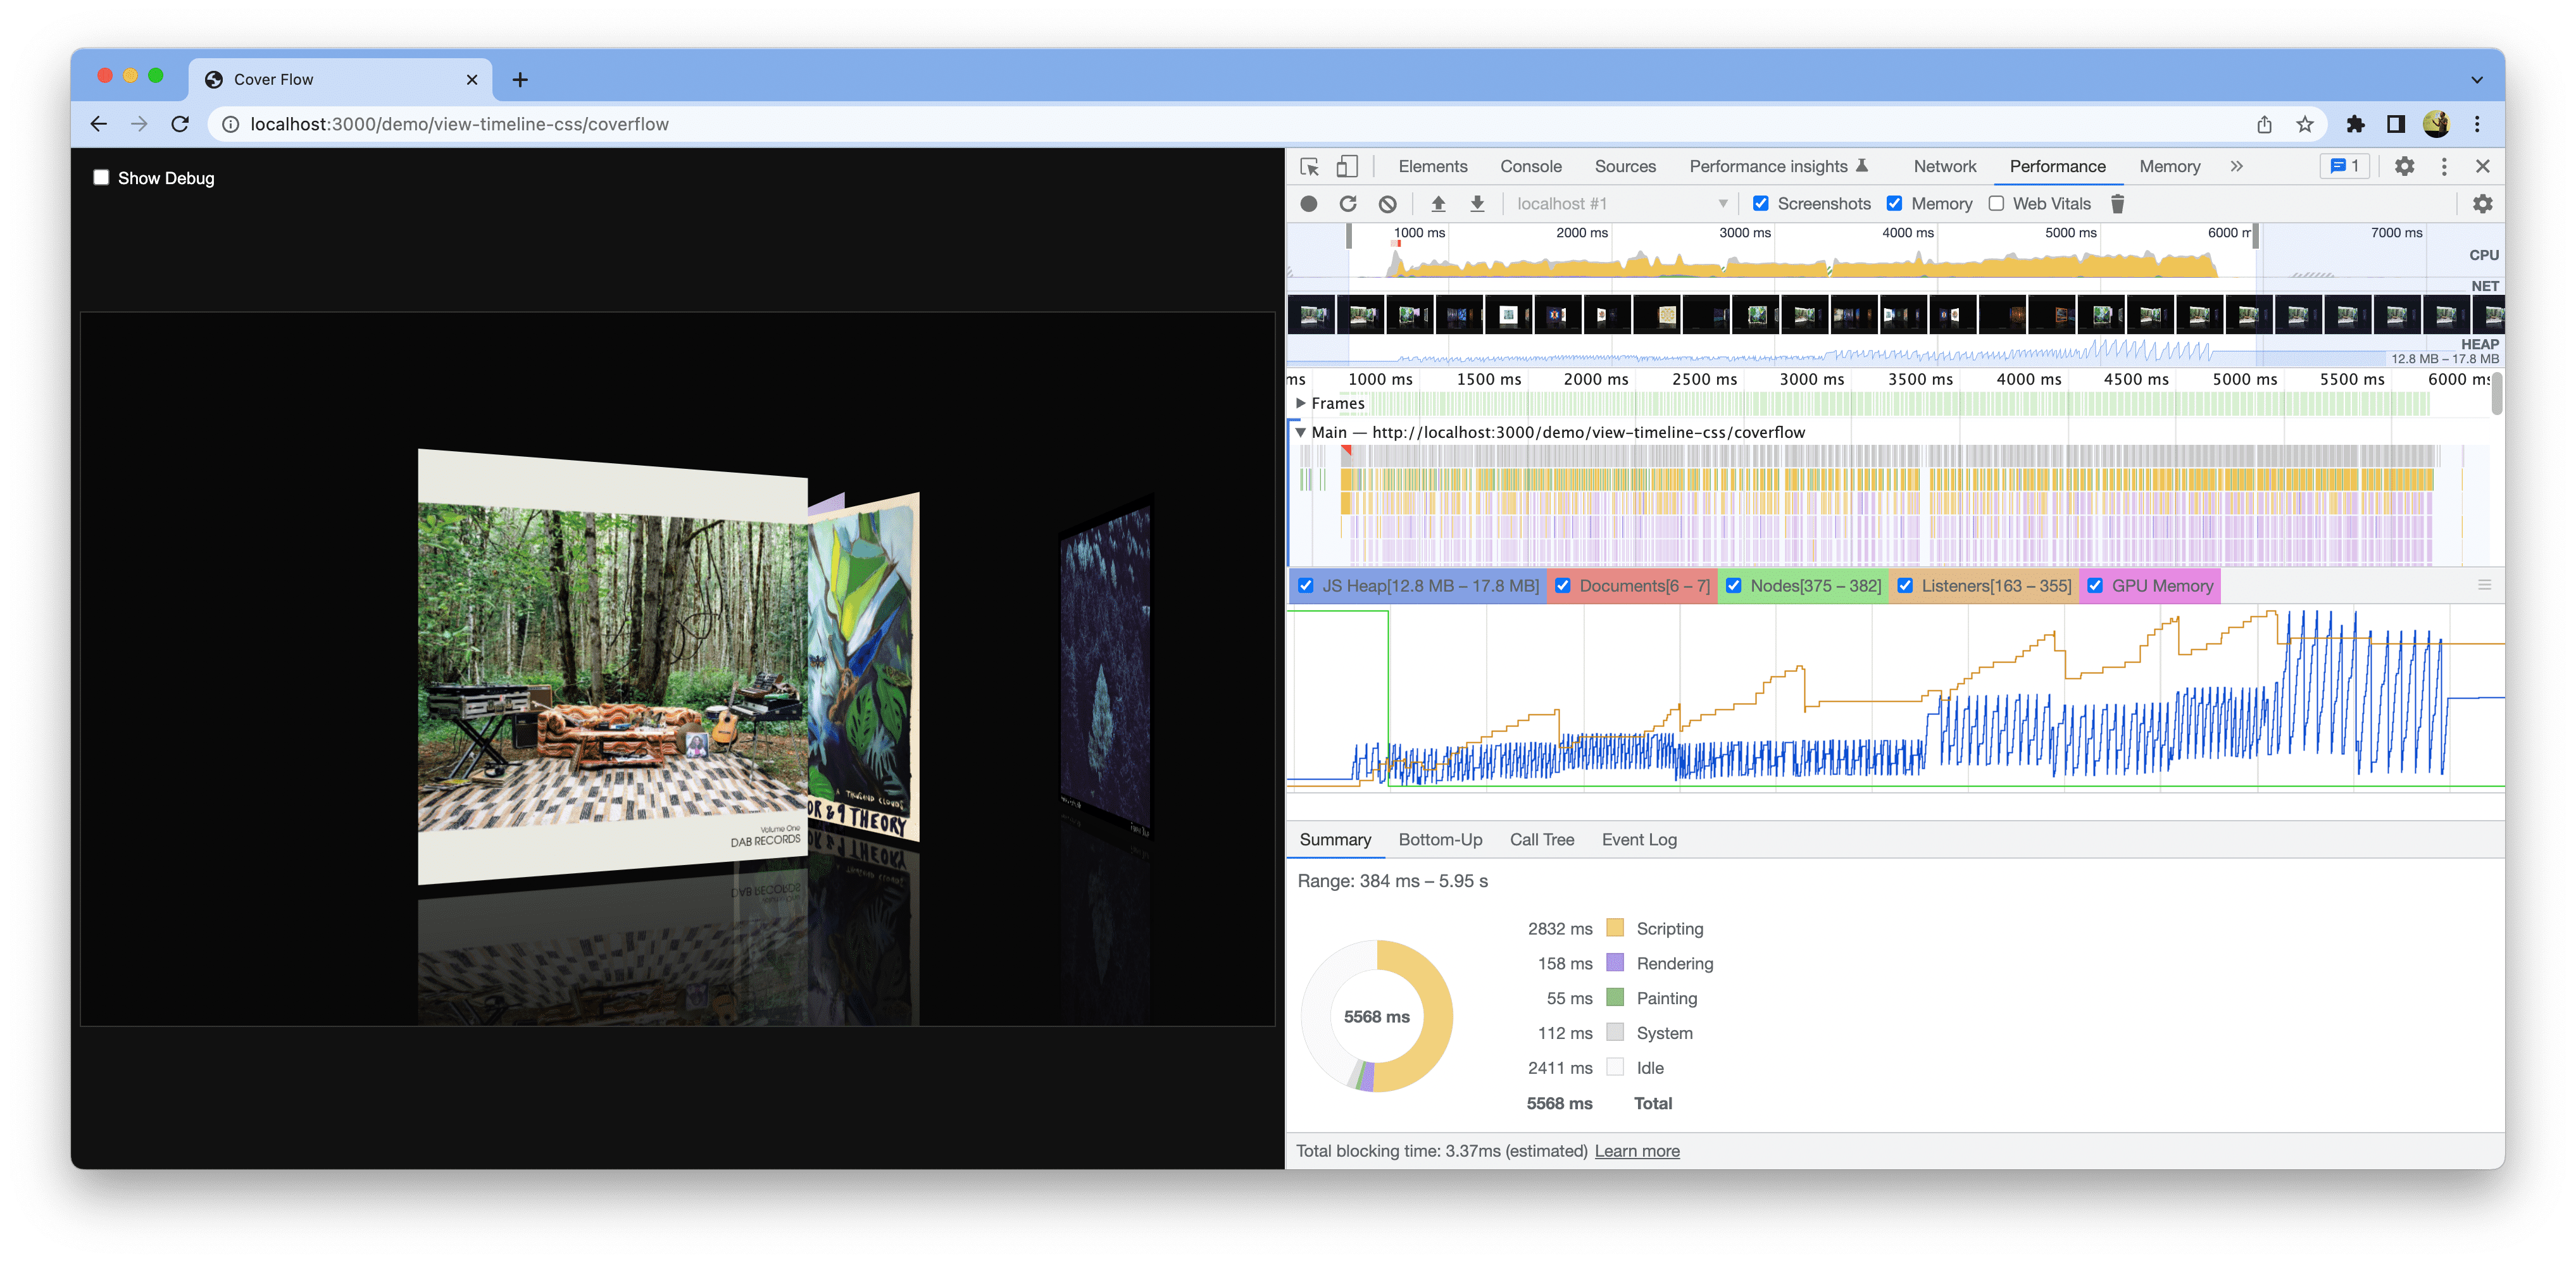 Ảnh chụp màn hình bản minh hoạ đang mở trong Chrome. Công cụ cho nhà phát triển đang mở và hiển thị số liệu đo lường hiệu suất cơ sở.